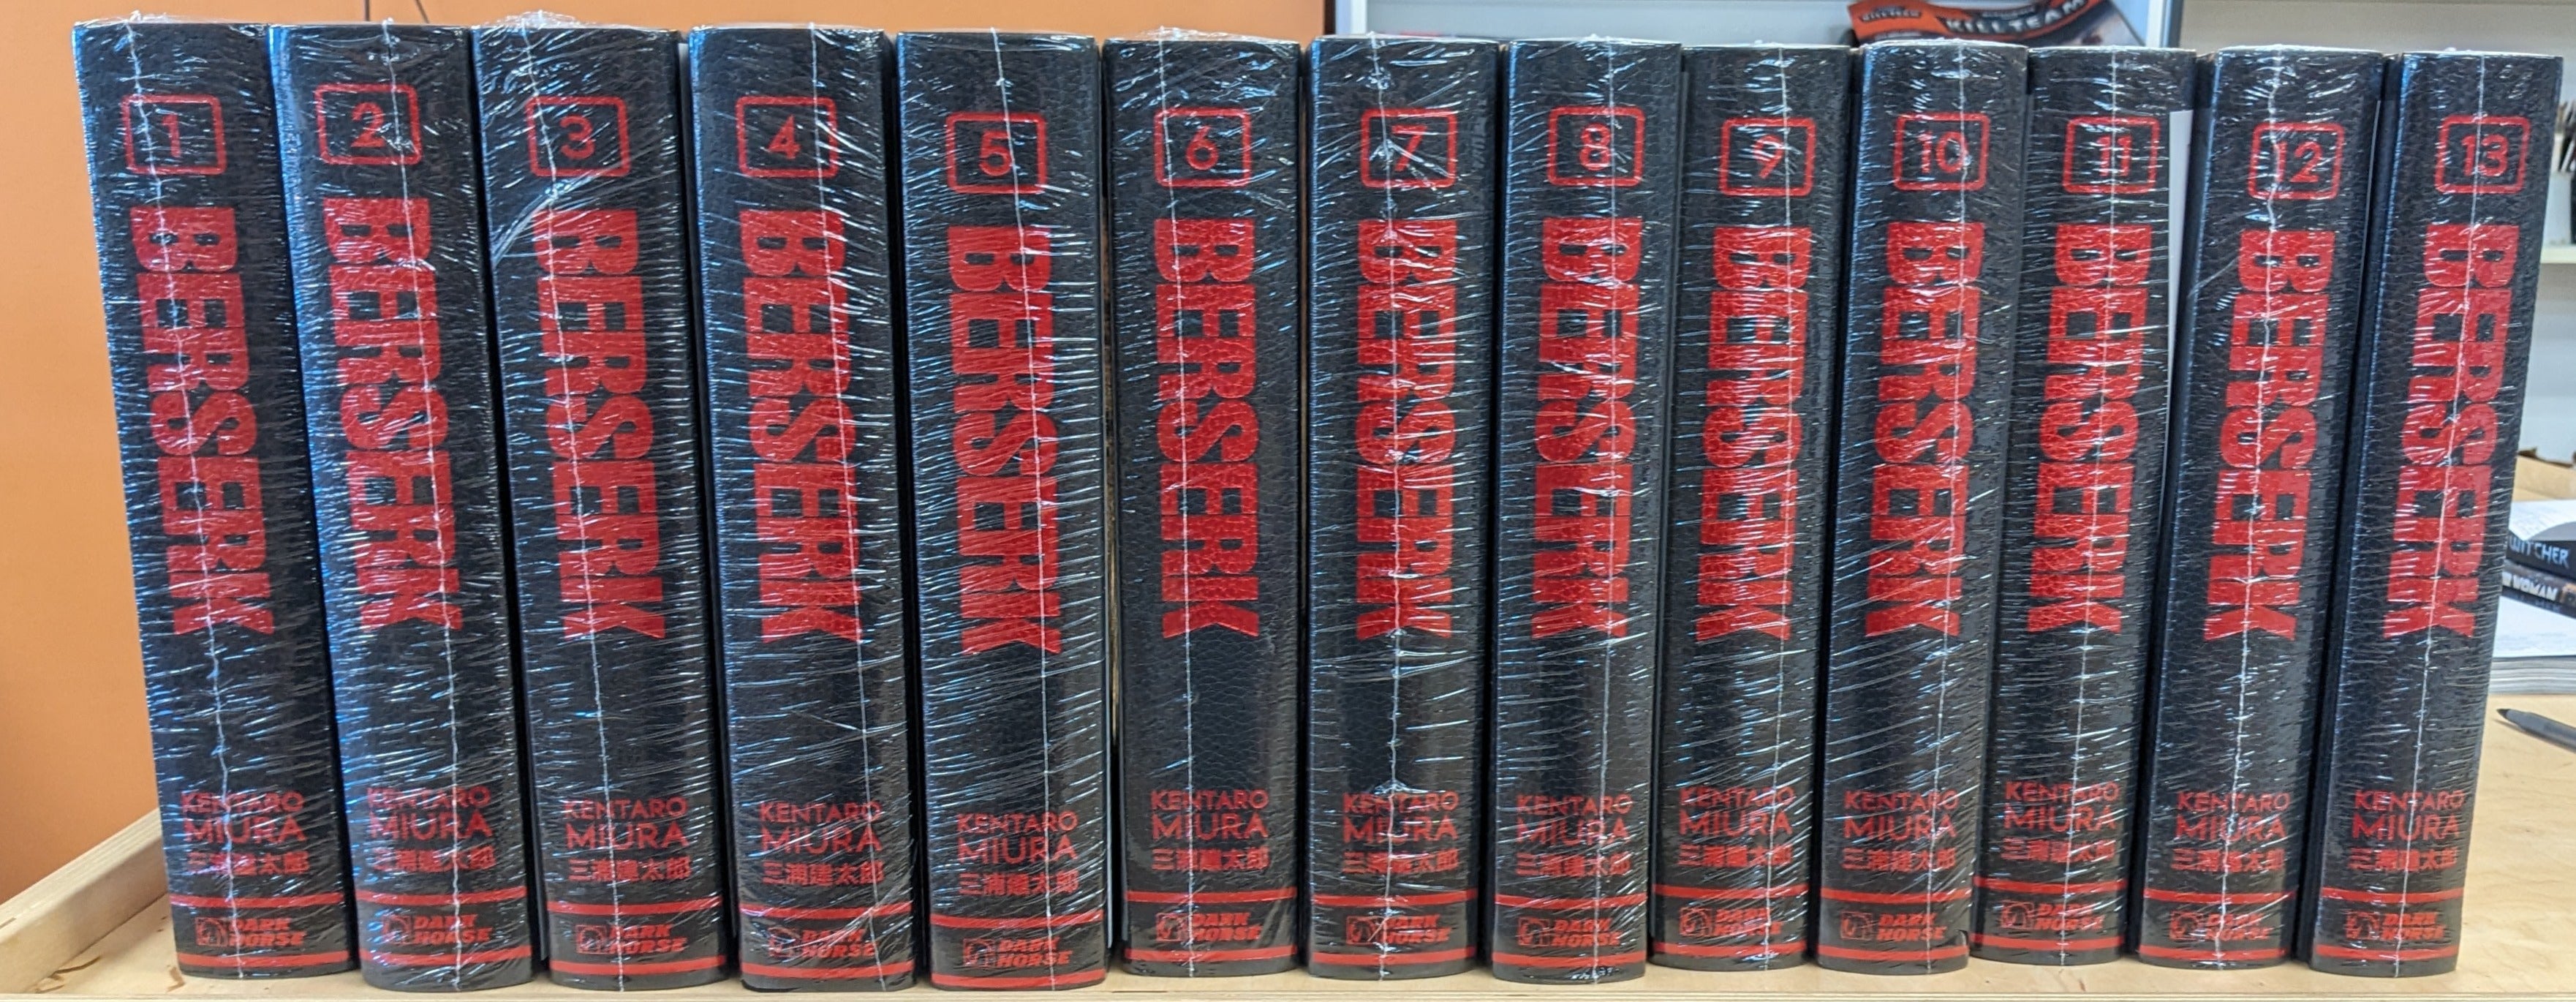 Berserk Deluxe Volumes 4-6 Collection Set